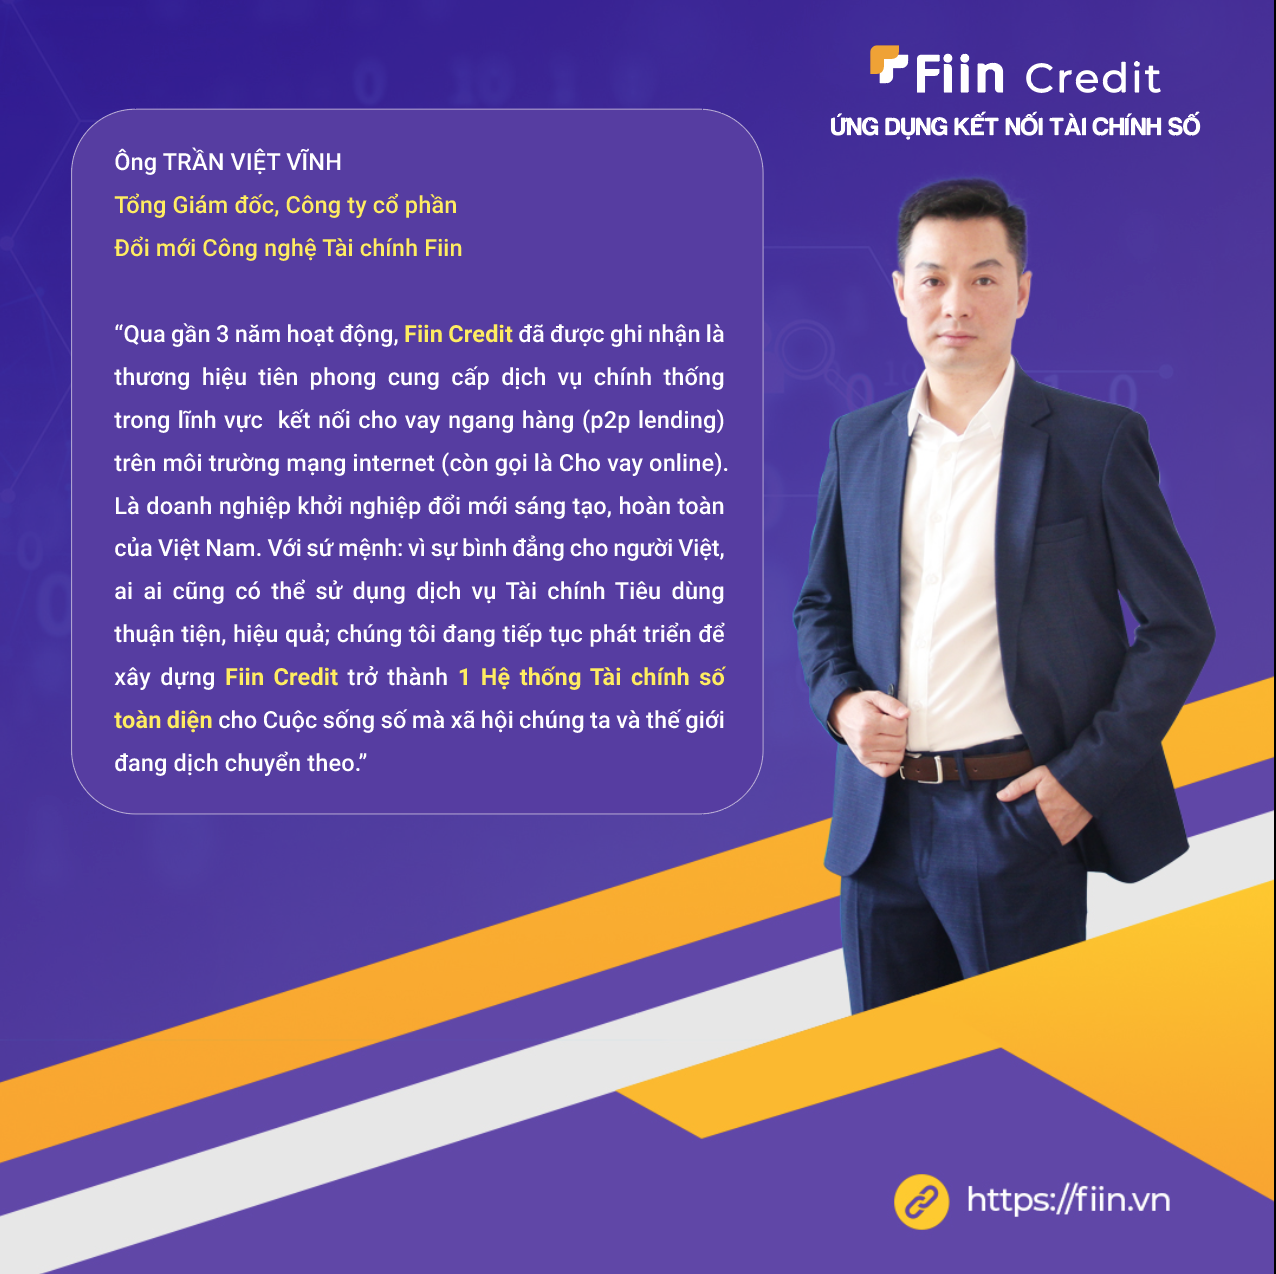 CEO của Fiin - ông Trần Việt Vĩnh đã có kinh nghiệm gần 20 năm làm việc trong lĩnh vực tài chính